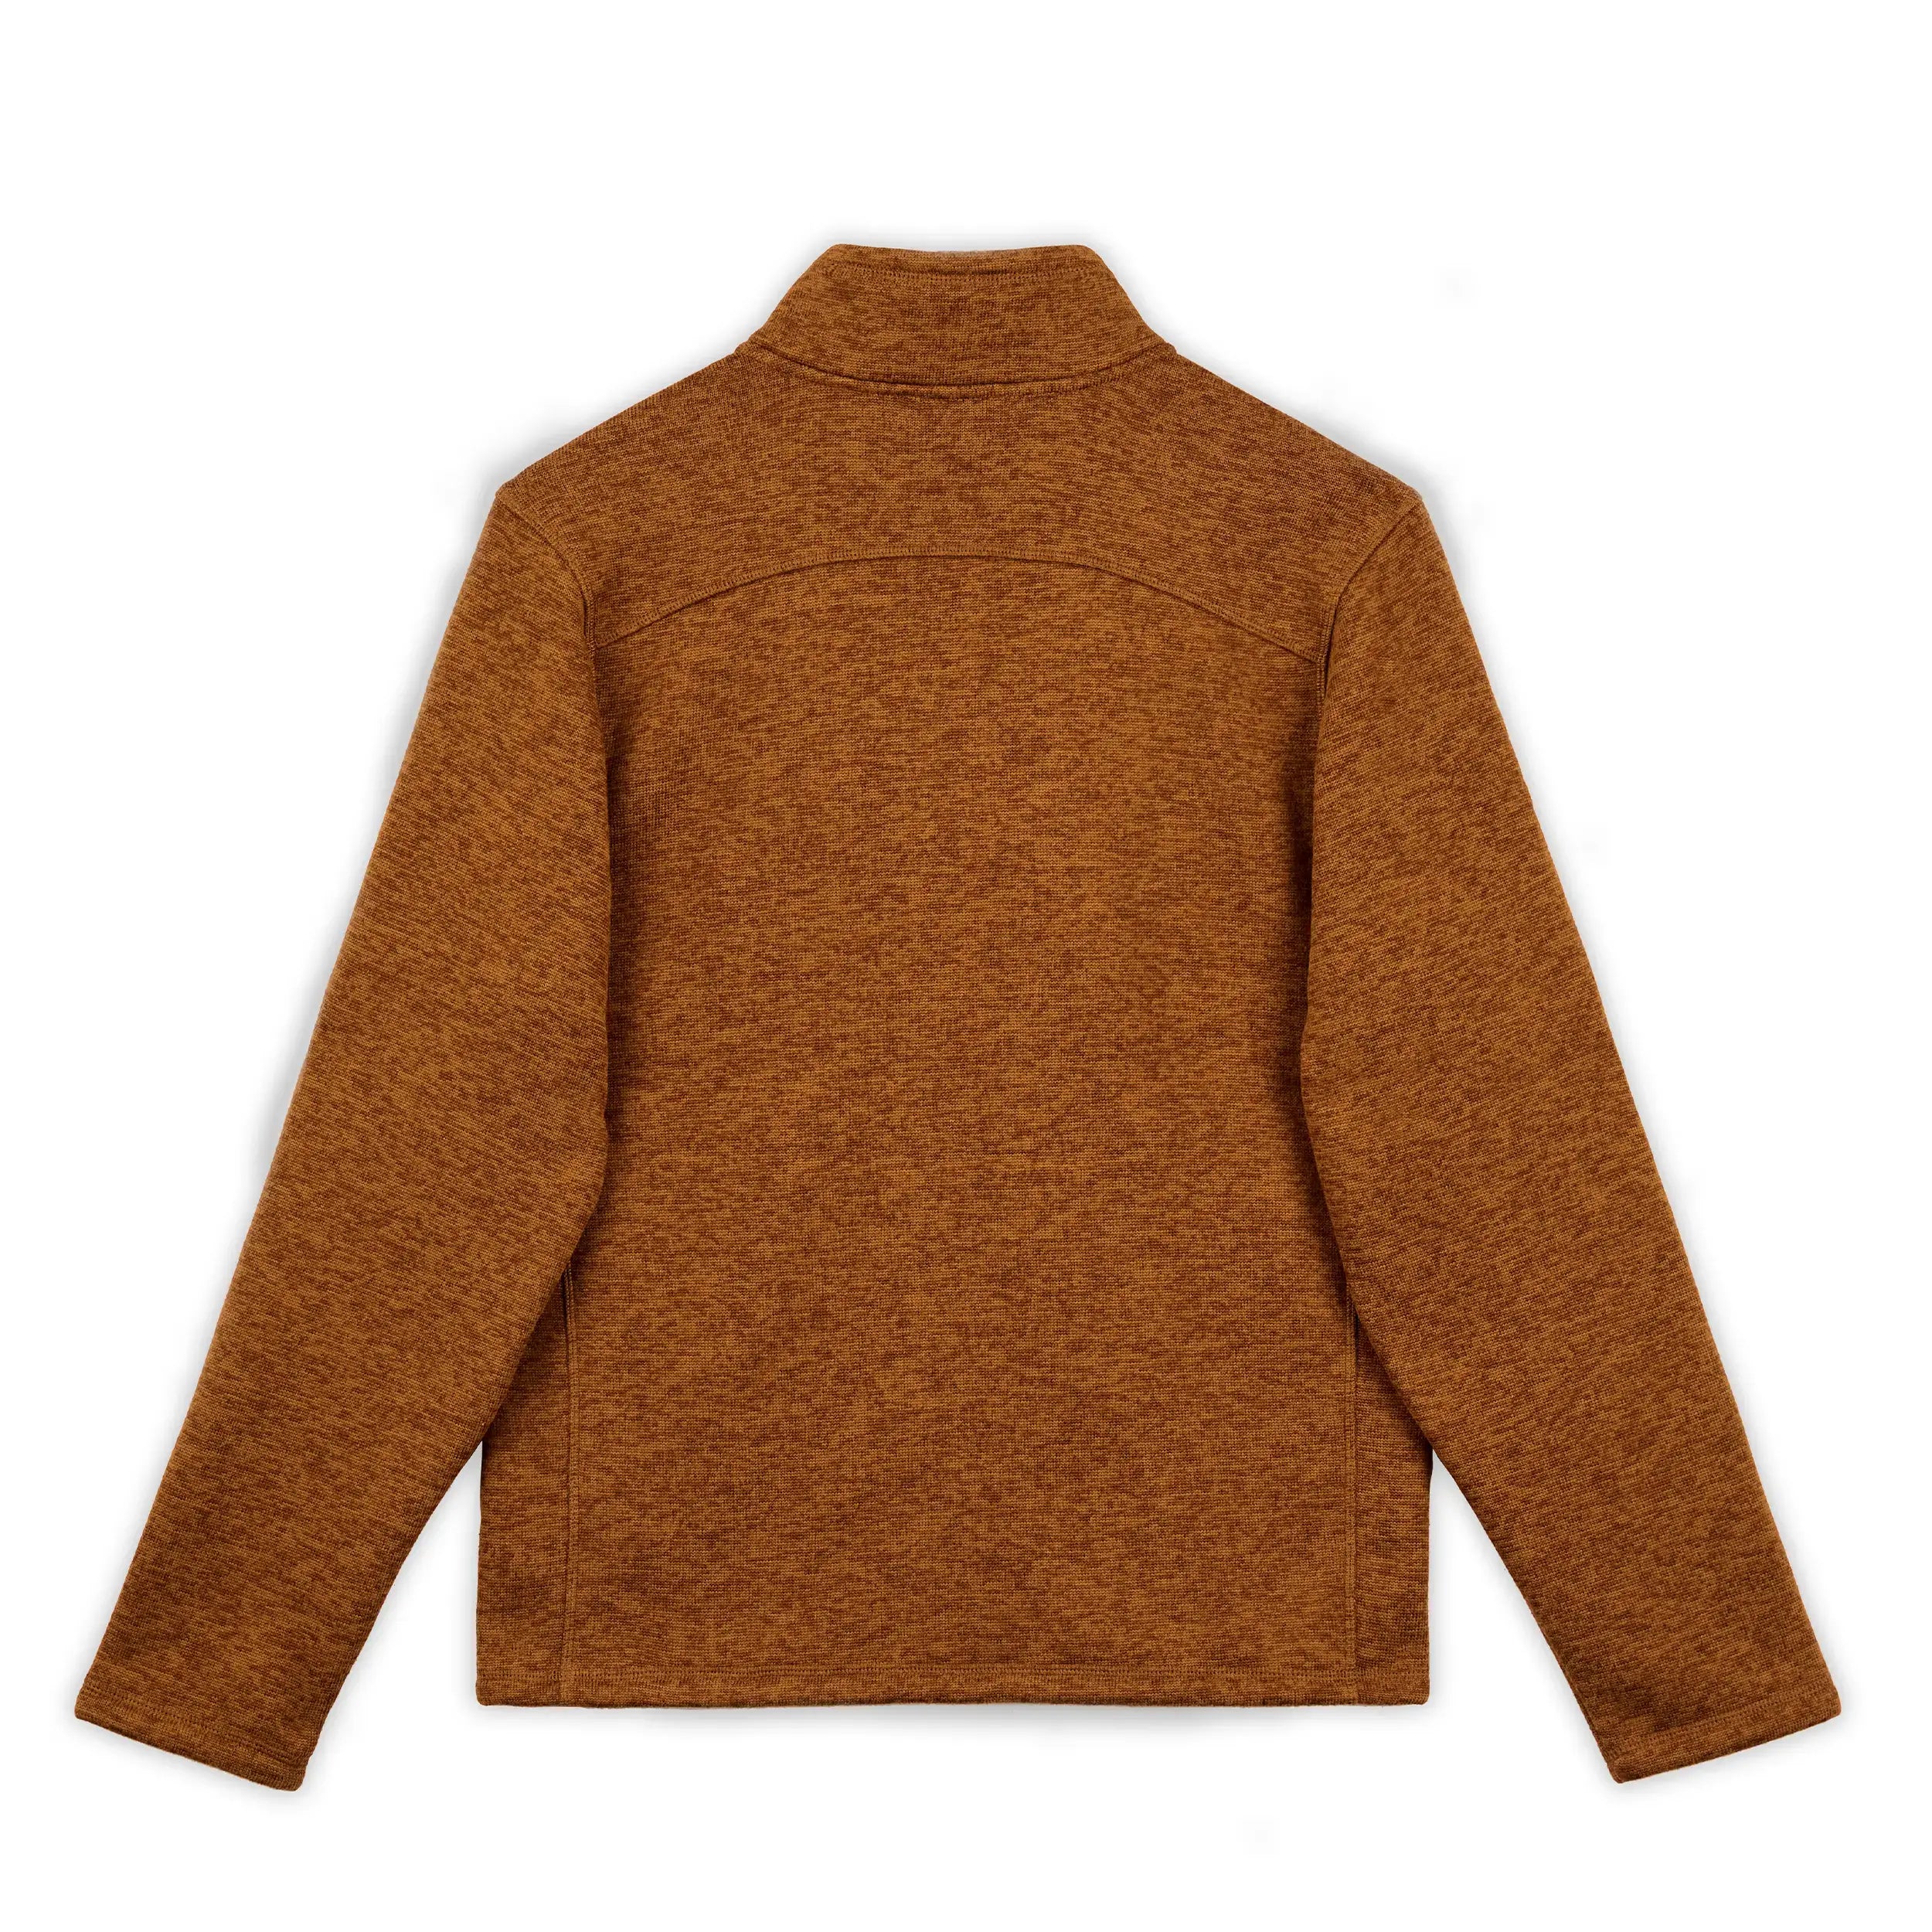 M's Full-Zip Sweater Fleece - Hooké